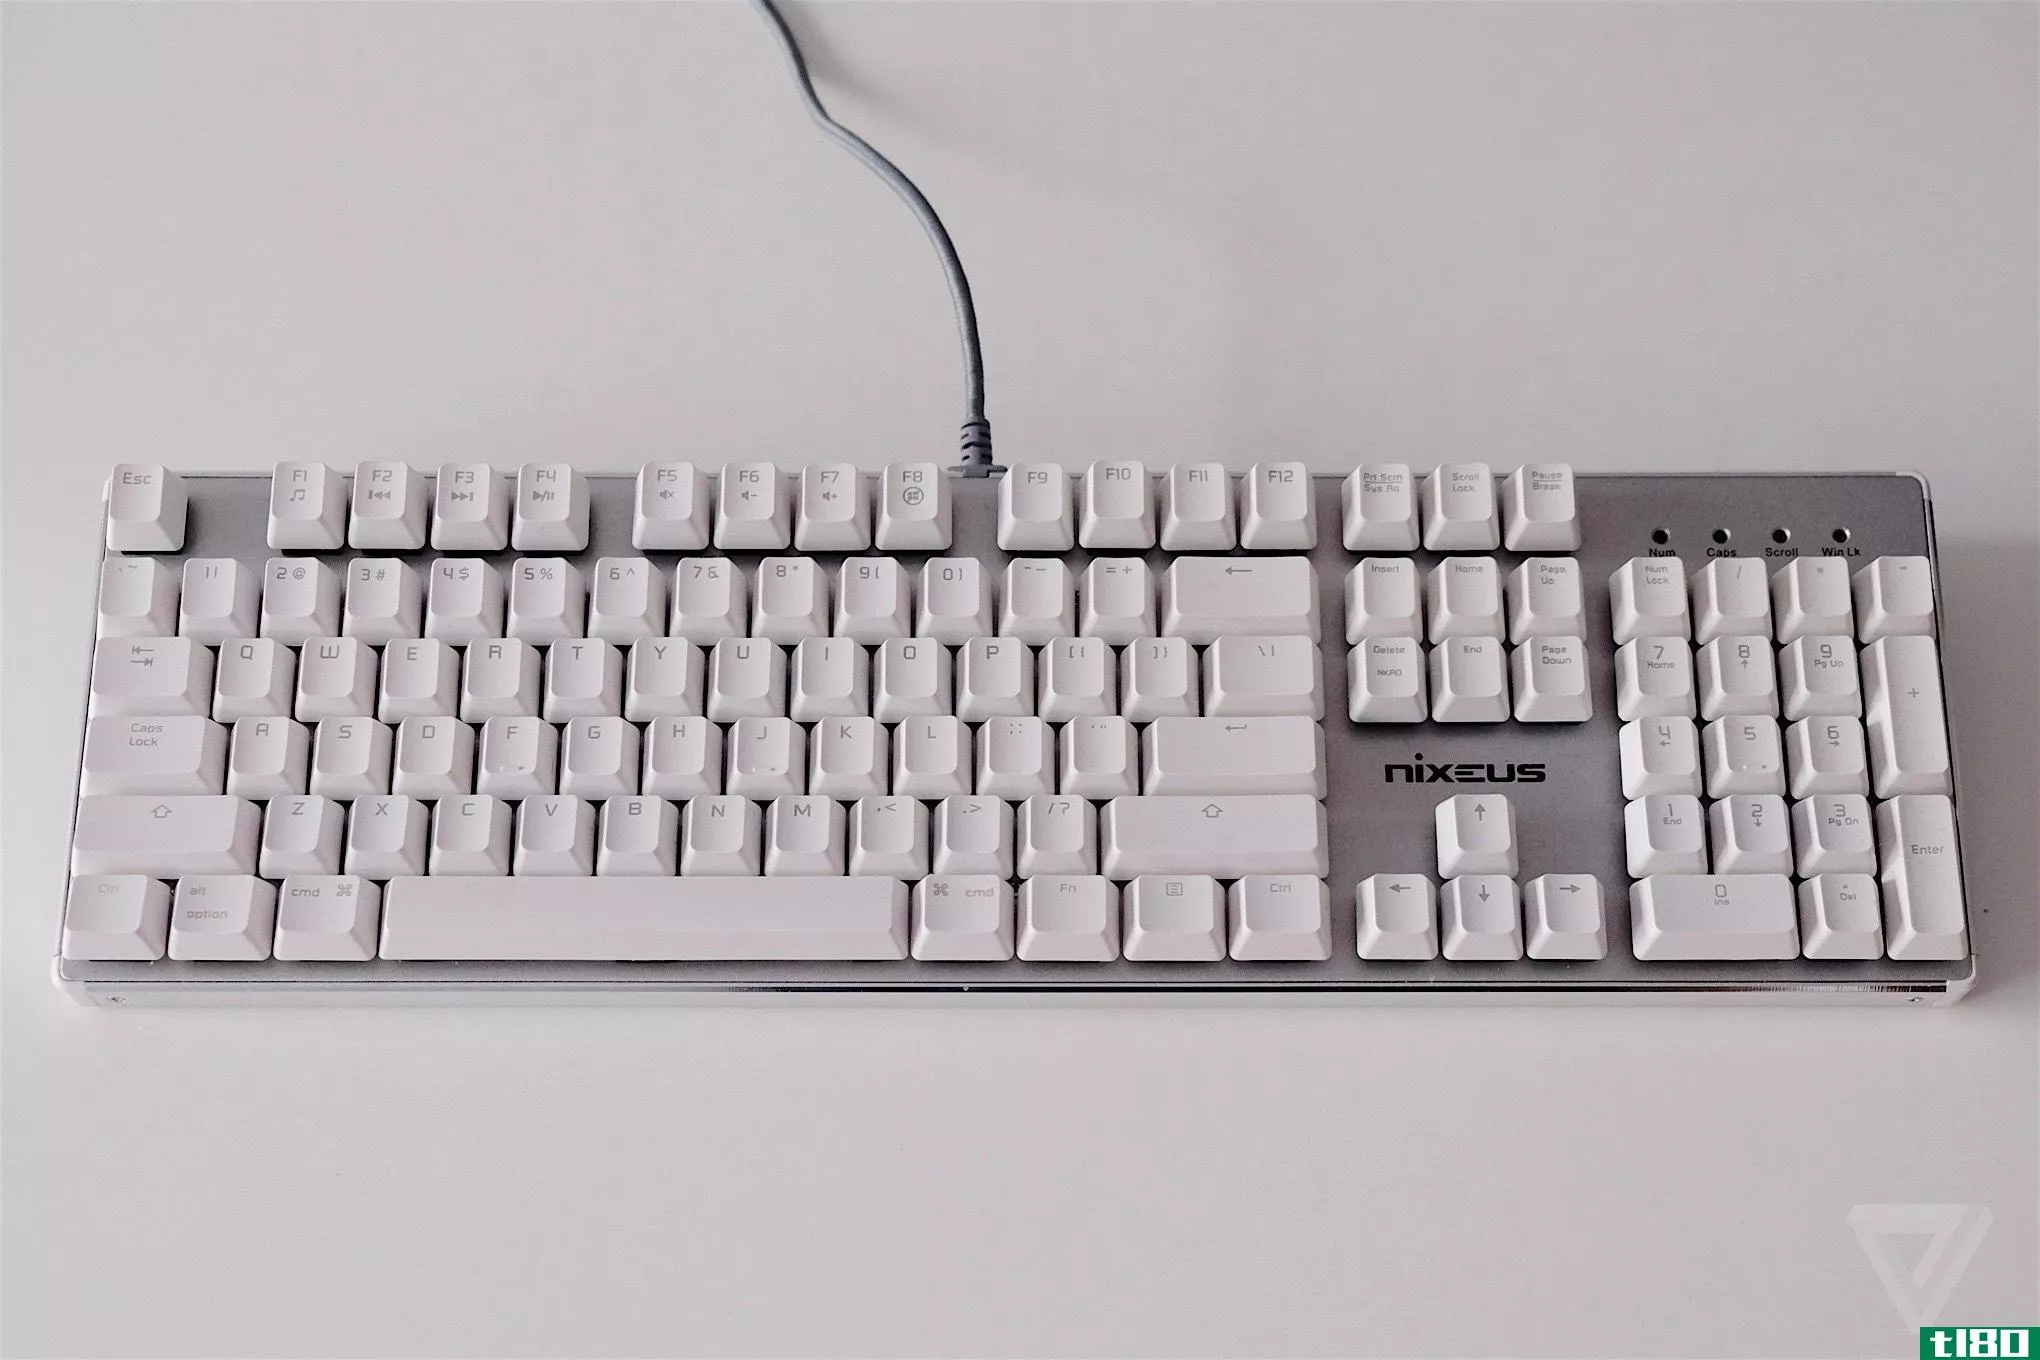 对于mac用户来说，这种机械键盘是一个很好的、便宜的选择